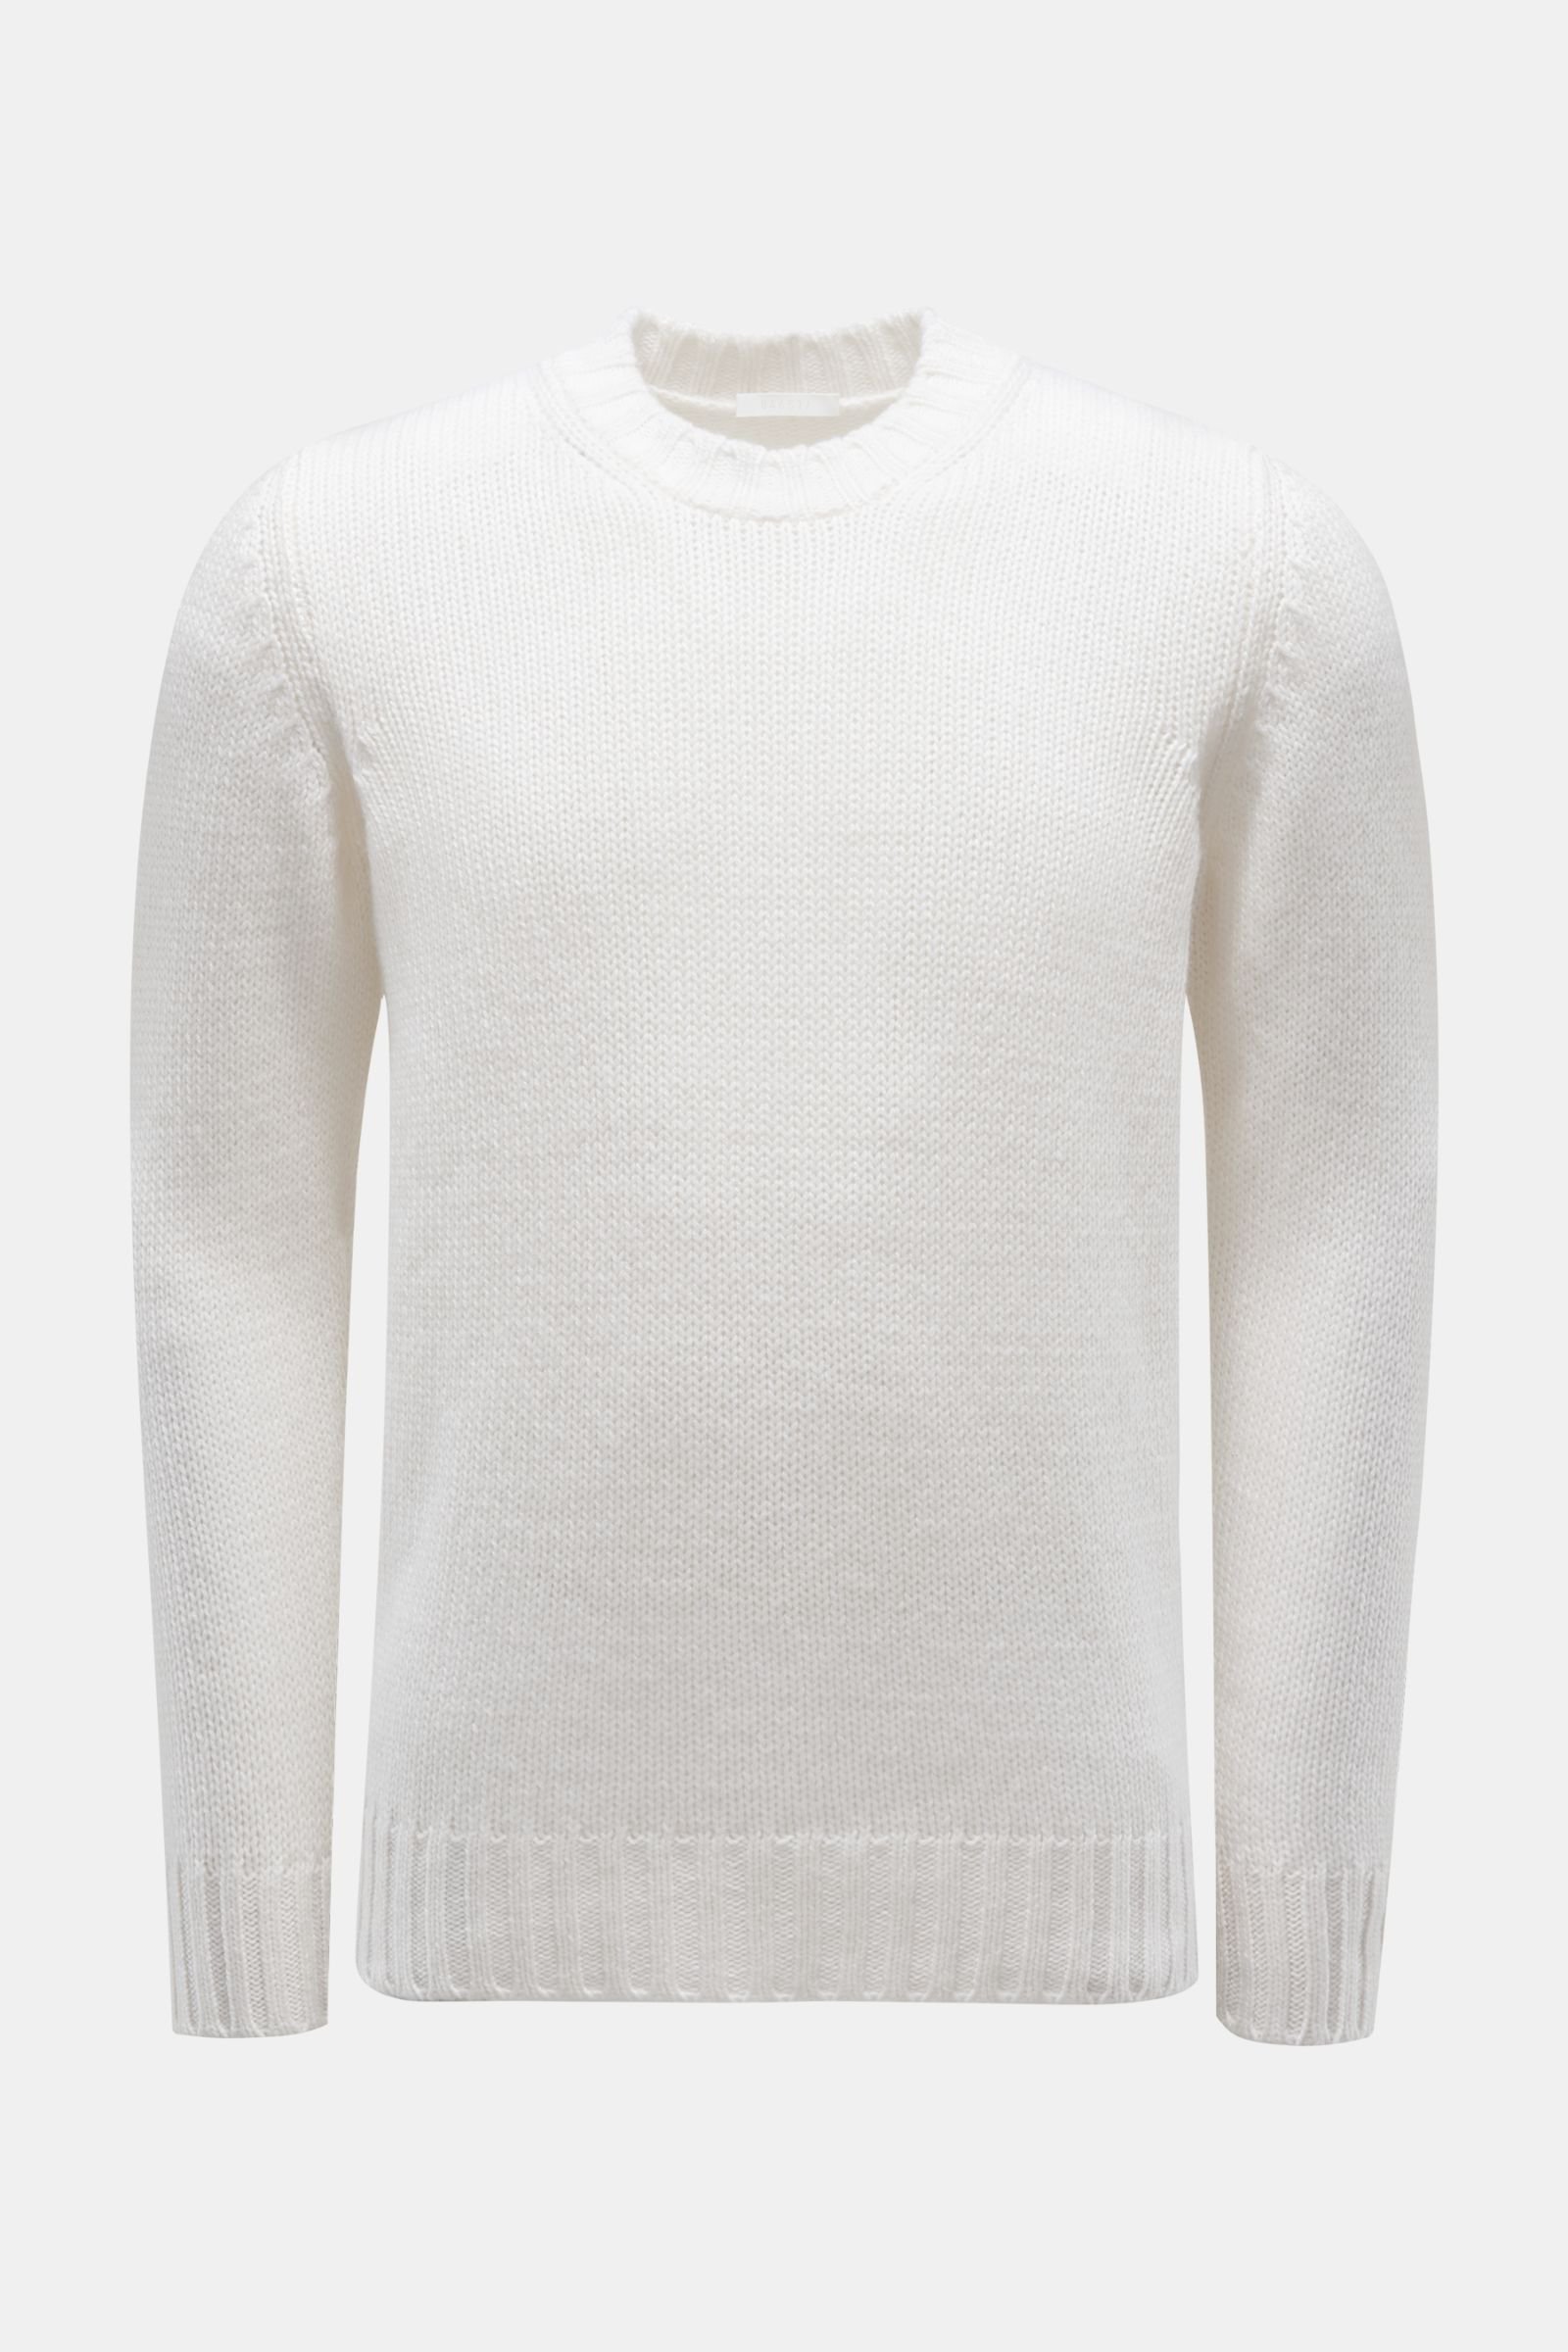 Cashmere Rundhals-Pullover weiß